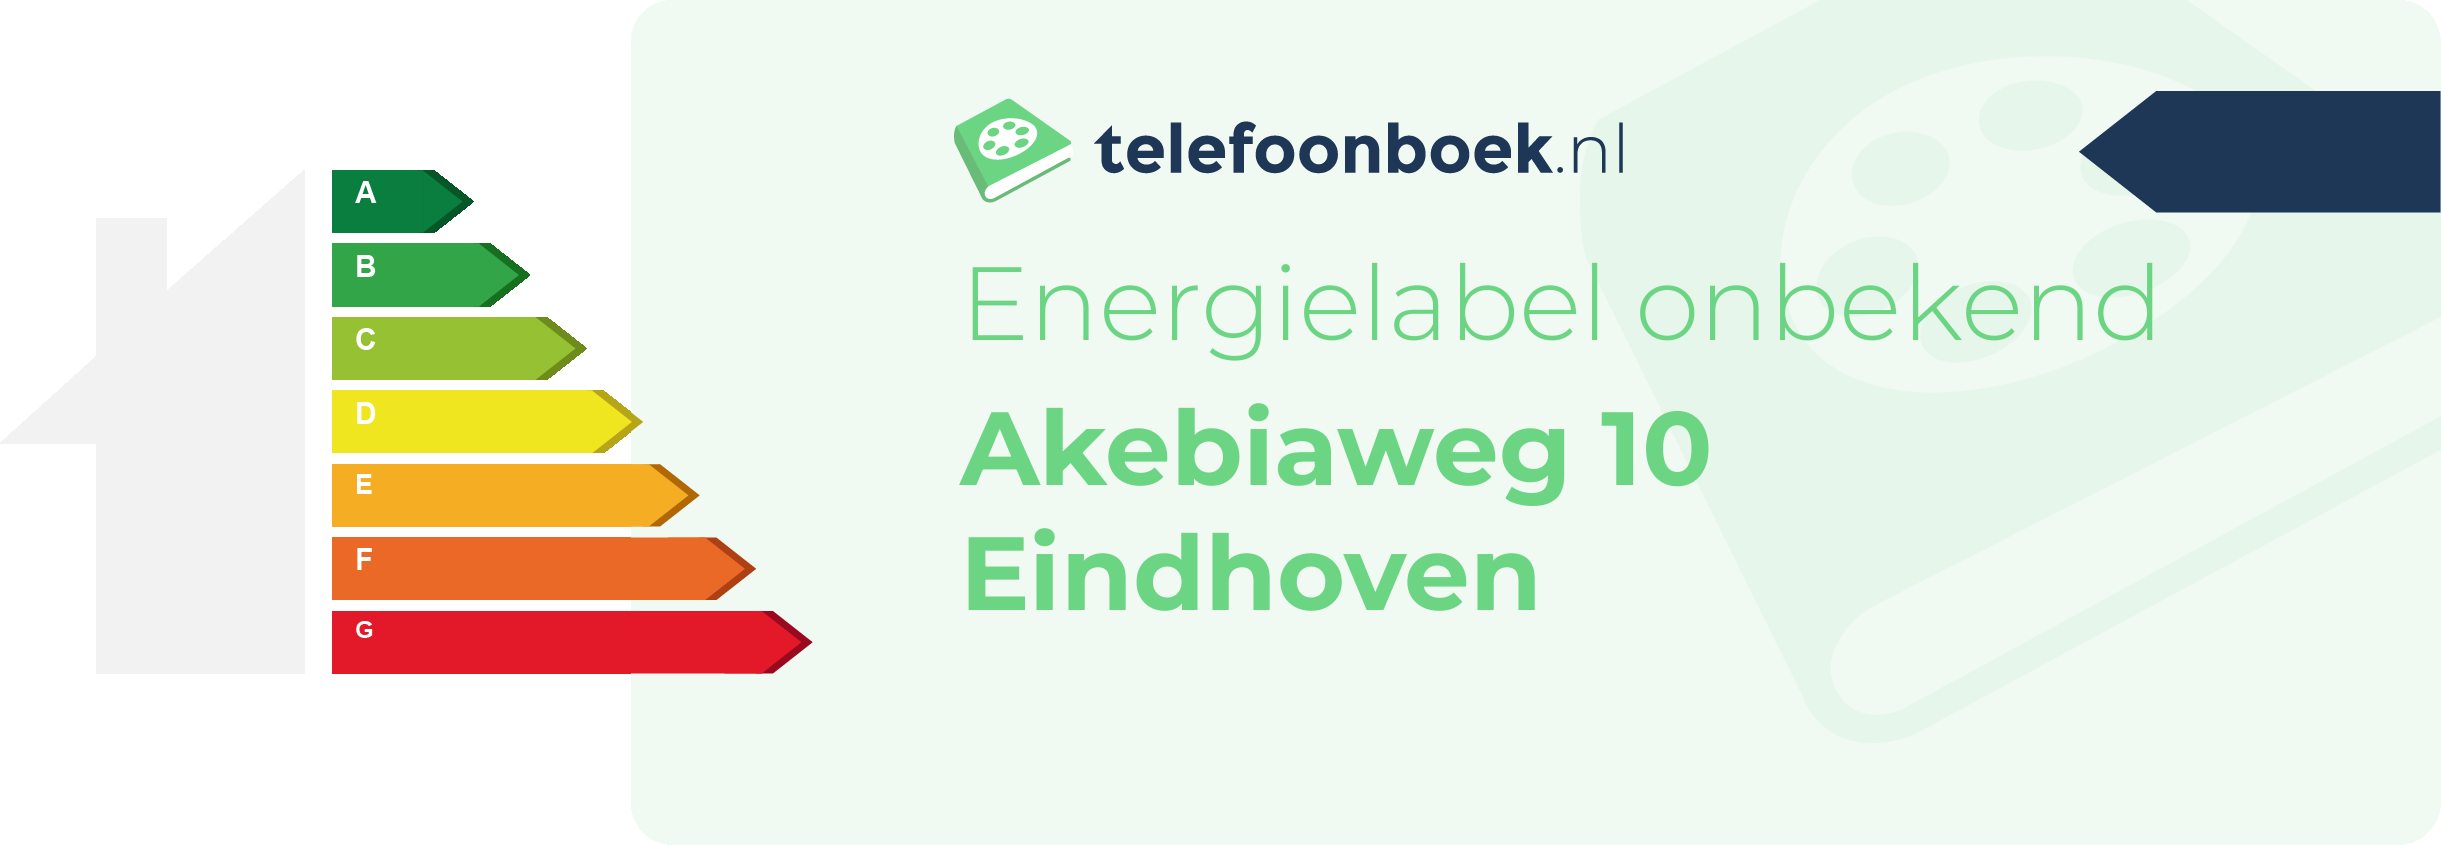 Energielabel Akebiaweg 10 Eindhoven